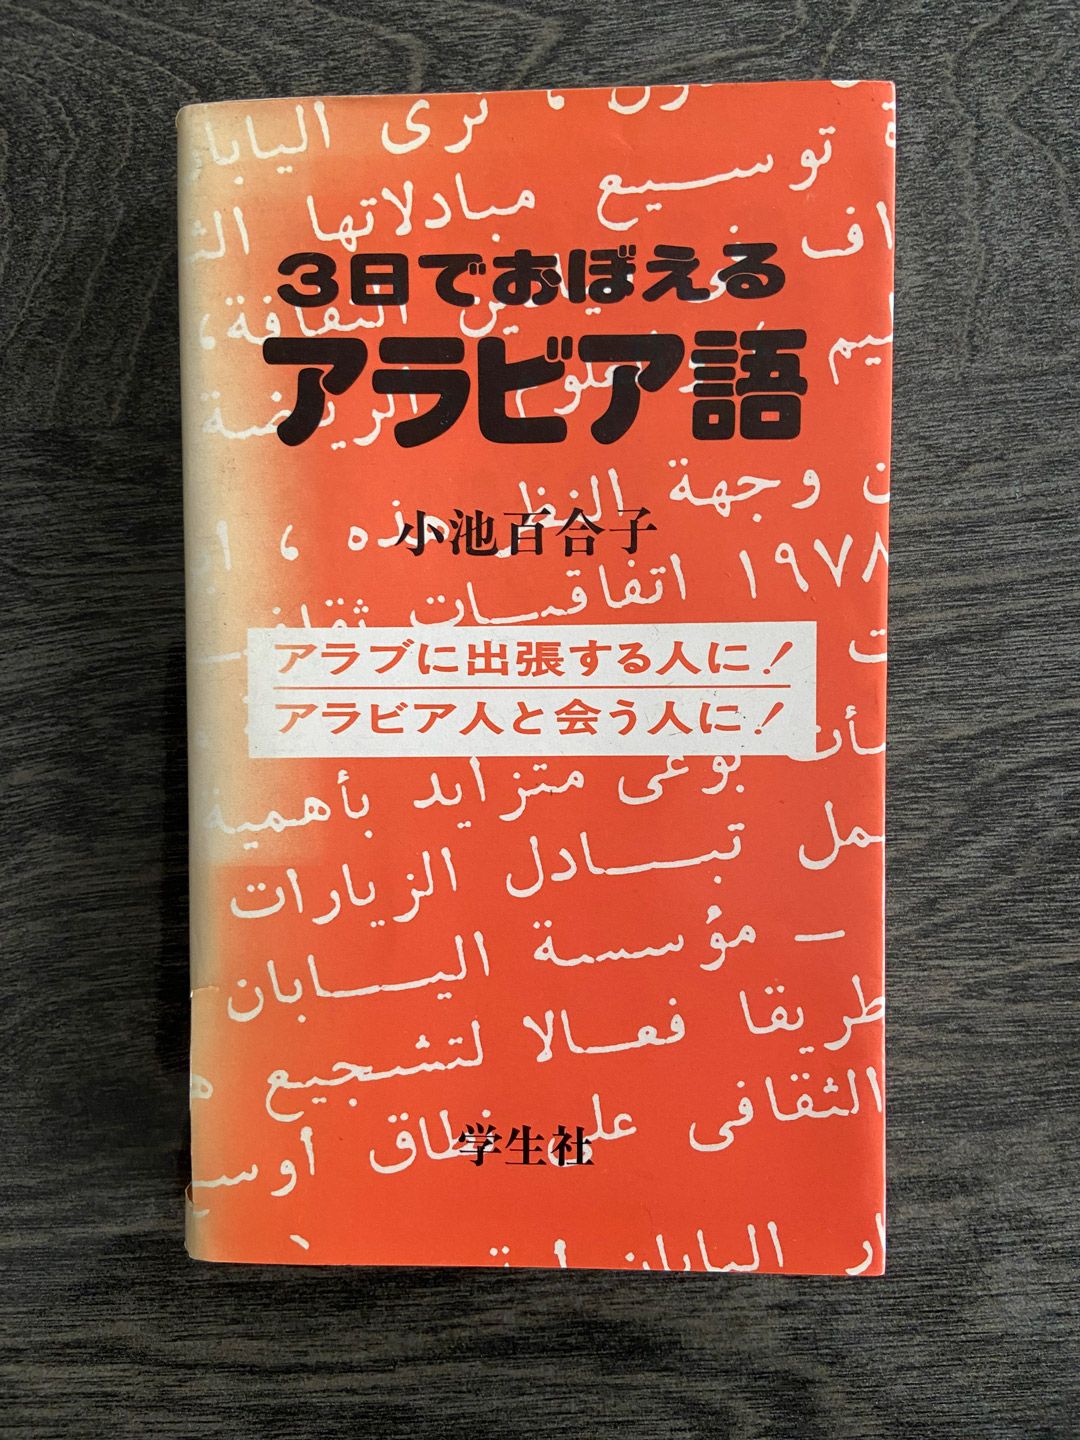 小池氏の著書『3日でおぼえるアラビア語』（学生社）の表紙